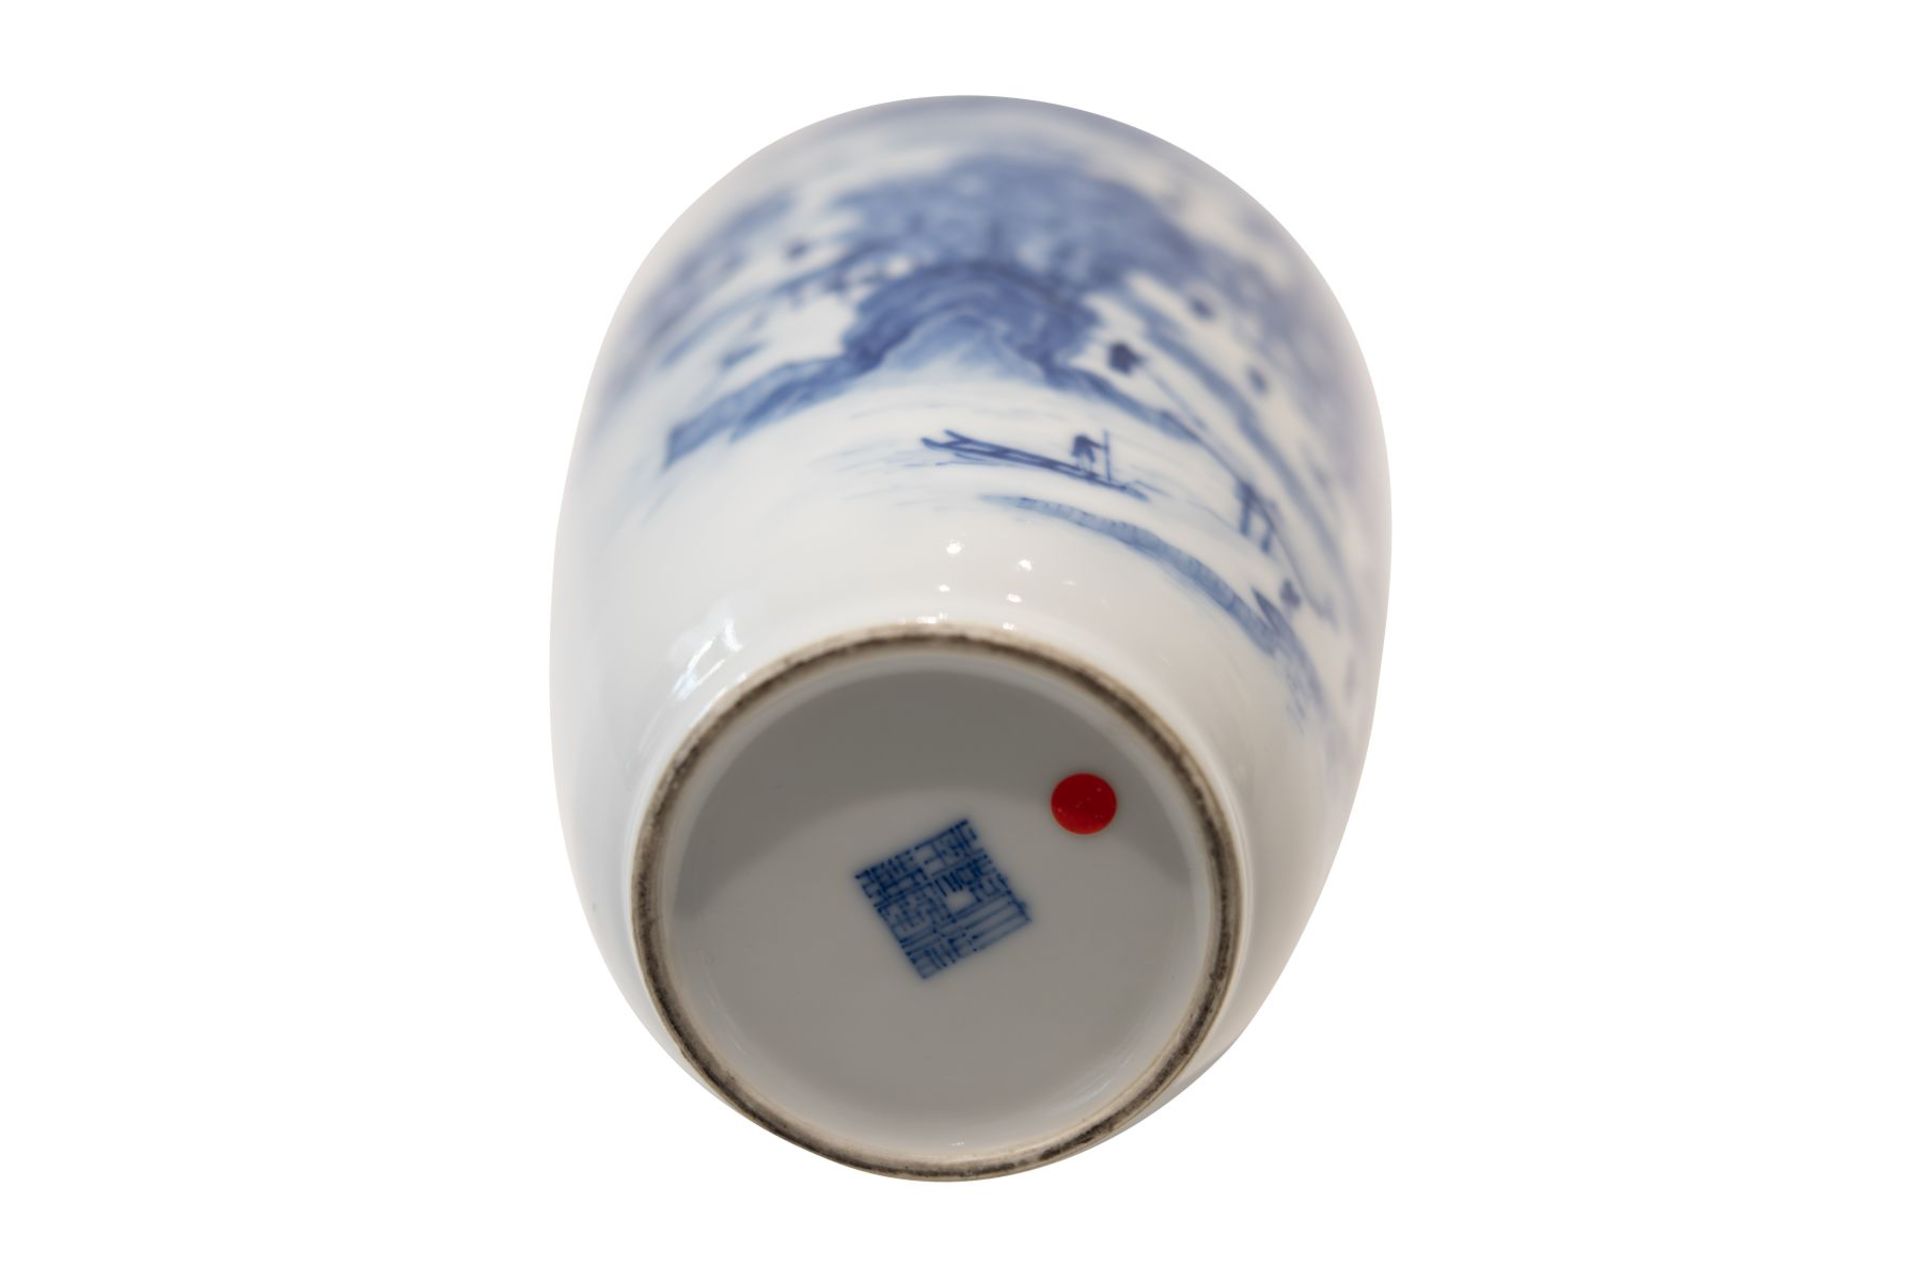 Blau-weise VaseBlau-weise Vase mit unterglasurblaue Vierzeichen Marke. Porzellan, auf der Wandung - Bild 5 aus 5